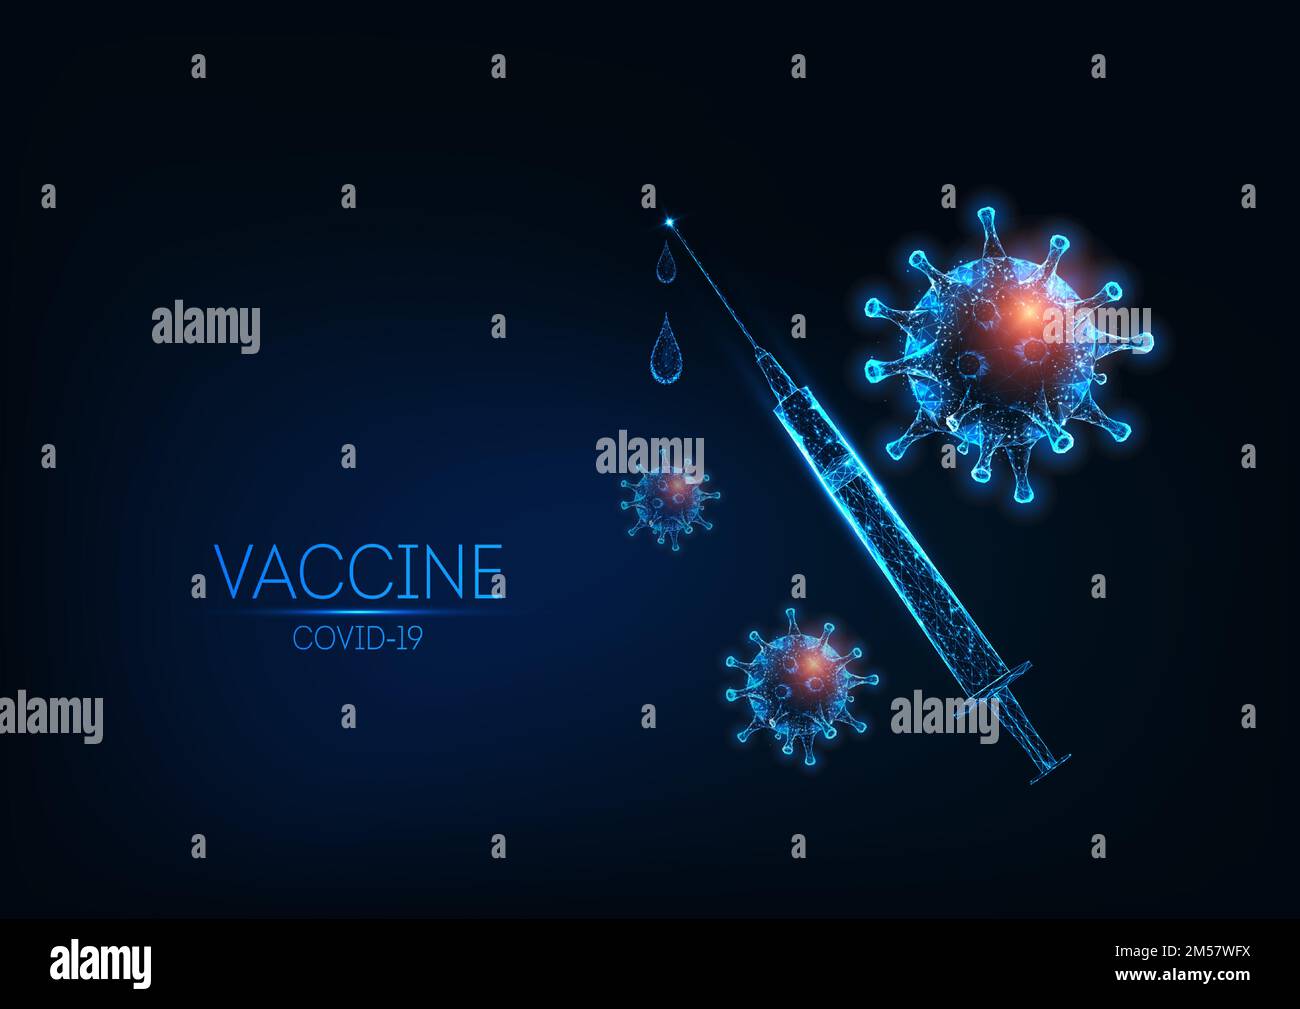 Concetto futuristico di vaccino contro il coronavirus Covid-19 con siringa poligonale a bassa luminosità e cellule virali su sfondo blu scuro. Struttura in filo moderno a rete des Illustrazione Vettoriale